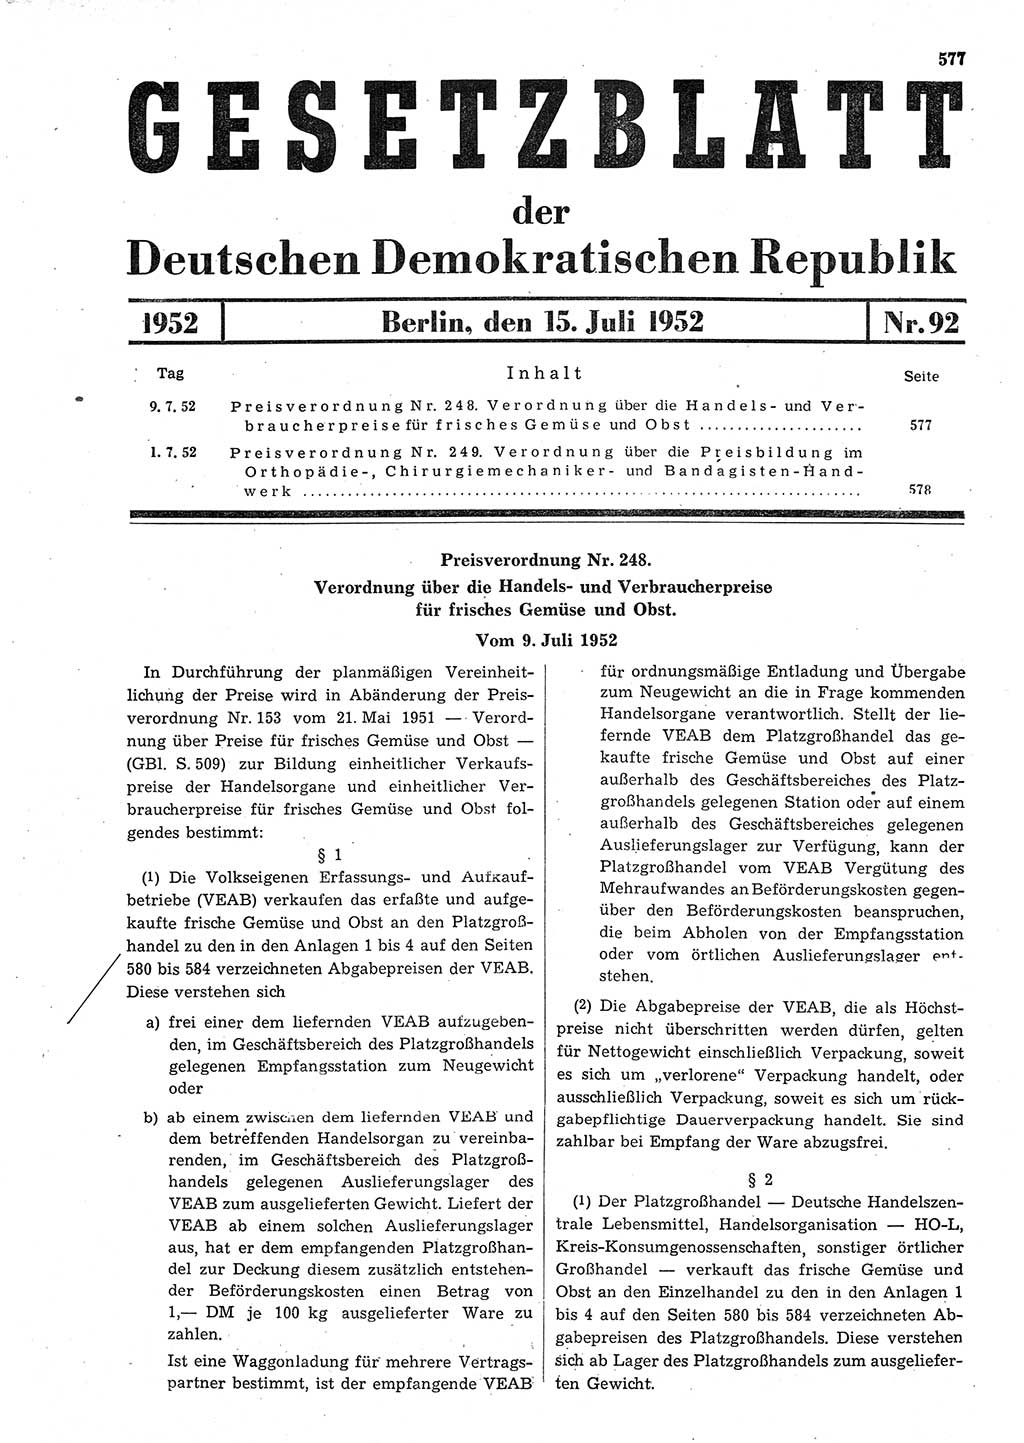 Gesetzblatt (GBl.) der Deutschen Demokratischen Republik (DDR) 1952, Seite 577 (GBl. DDR 1952, S. 577)